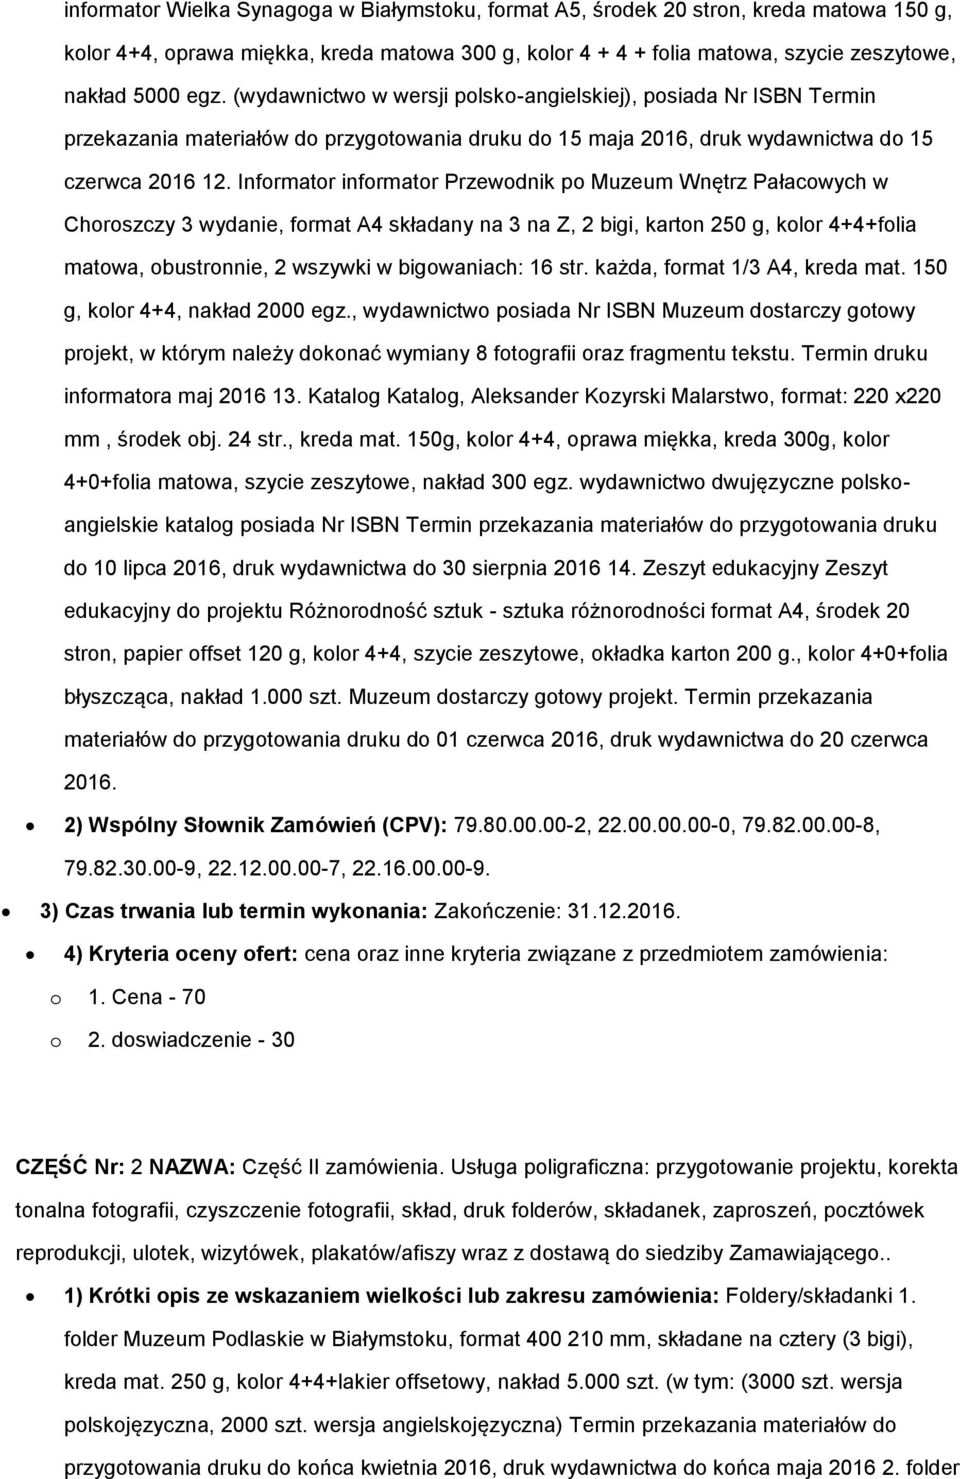 Informator informator Przewodnik po Muzeum Wnętrz Pałacowych w Choroszczy 3 wydanie, format A4 składany na 3 na Z, 2 bigi, karton 250 g, kolor 4+4+folia matowa, obustronnie, 2 wszywki w bigowaniach: